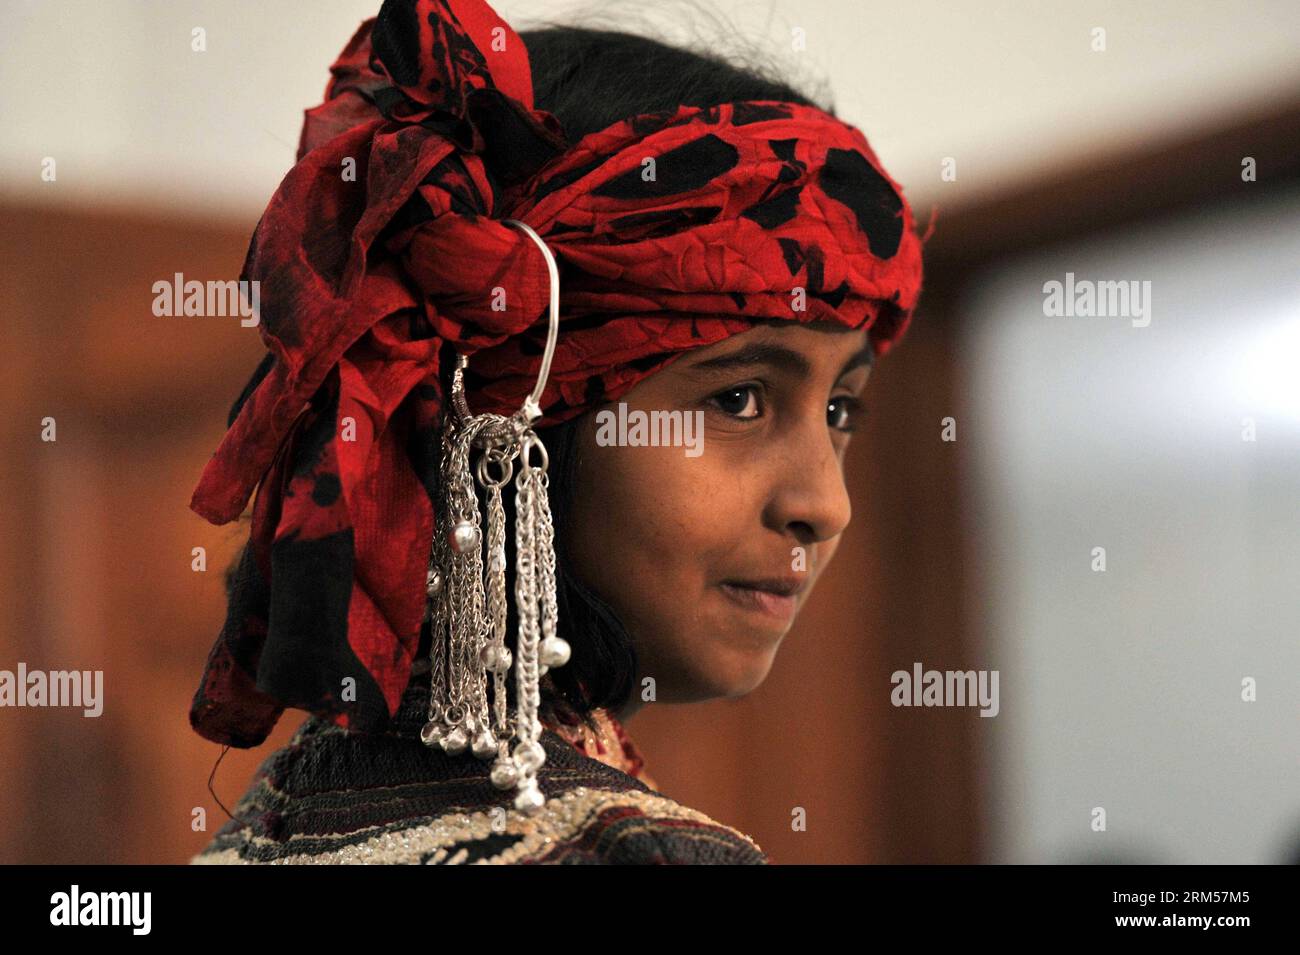 Bildnummer : 60592639 Datum : 12.10.2013 Copyright : imago/Xinhua SANAA, 12 octobre 2013 (Xinhua) -- Une jeune fille yéménite présente un costume traditionnel lors d'un défilé de mode à Sanaa, Yémen, le 12 octobre 2013. Le spectacle en salle, organisé par une organisation sociale pour le développement des femmes, cherche à récupérer l industrie touristique durement touchée par les troubles. Cependant, au Yémen, un pays profondément religieux et conservateur, il est impossible pour les femmes de faire un défilé de mode sur scène. Les organisateurs ont donc laissé les filles porter des clothers traditionnels pendant le spectacle devant les médias afin de présenter la culture yéménite au monde. (X Banque D'Images